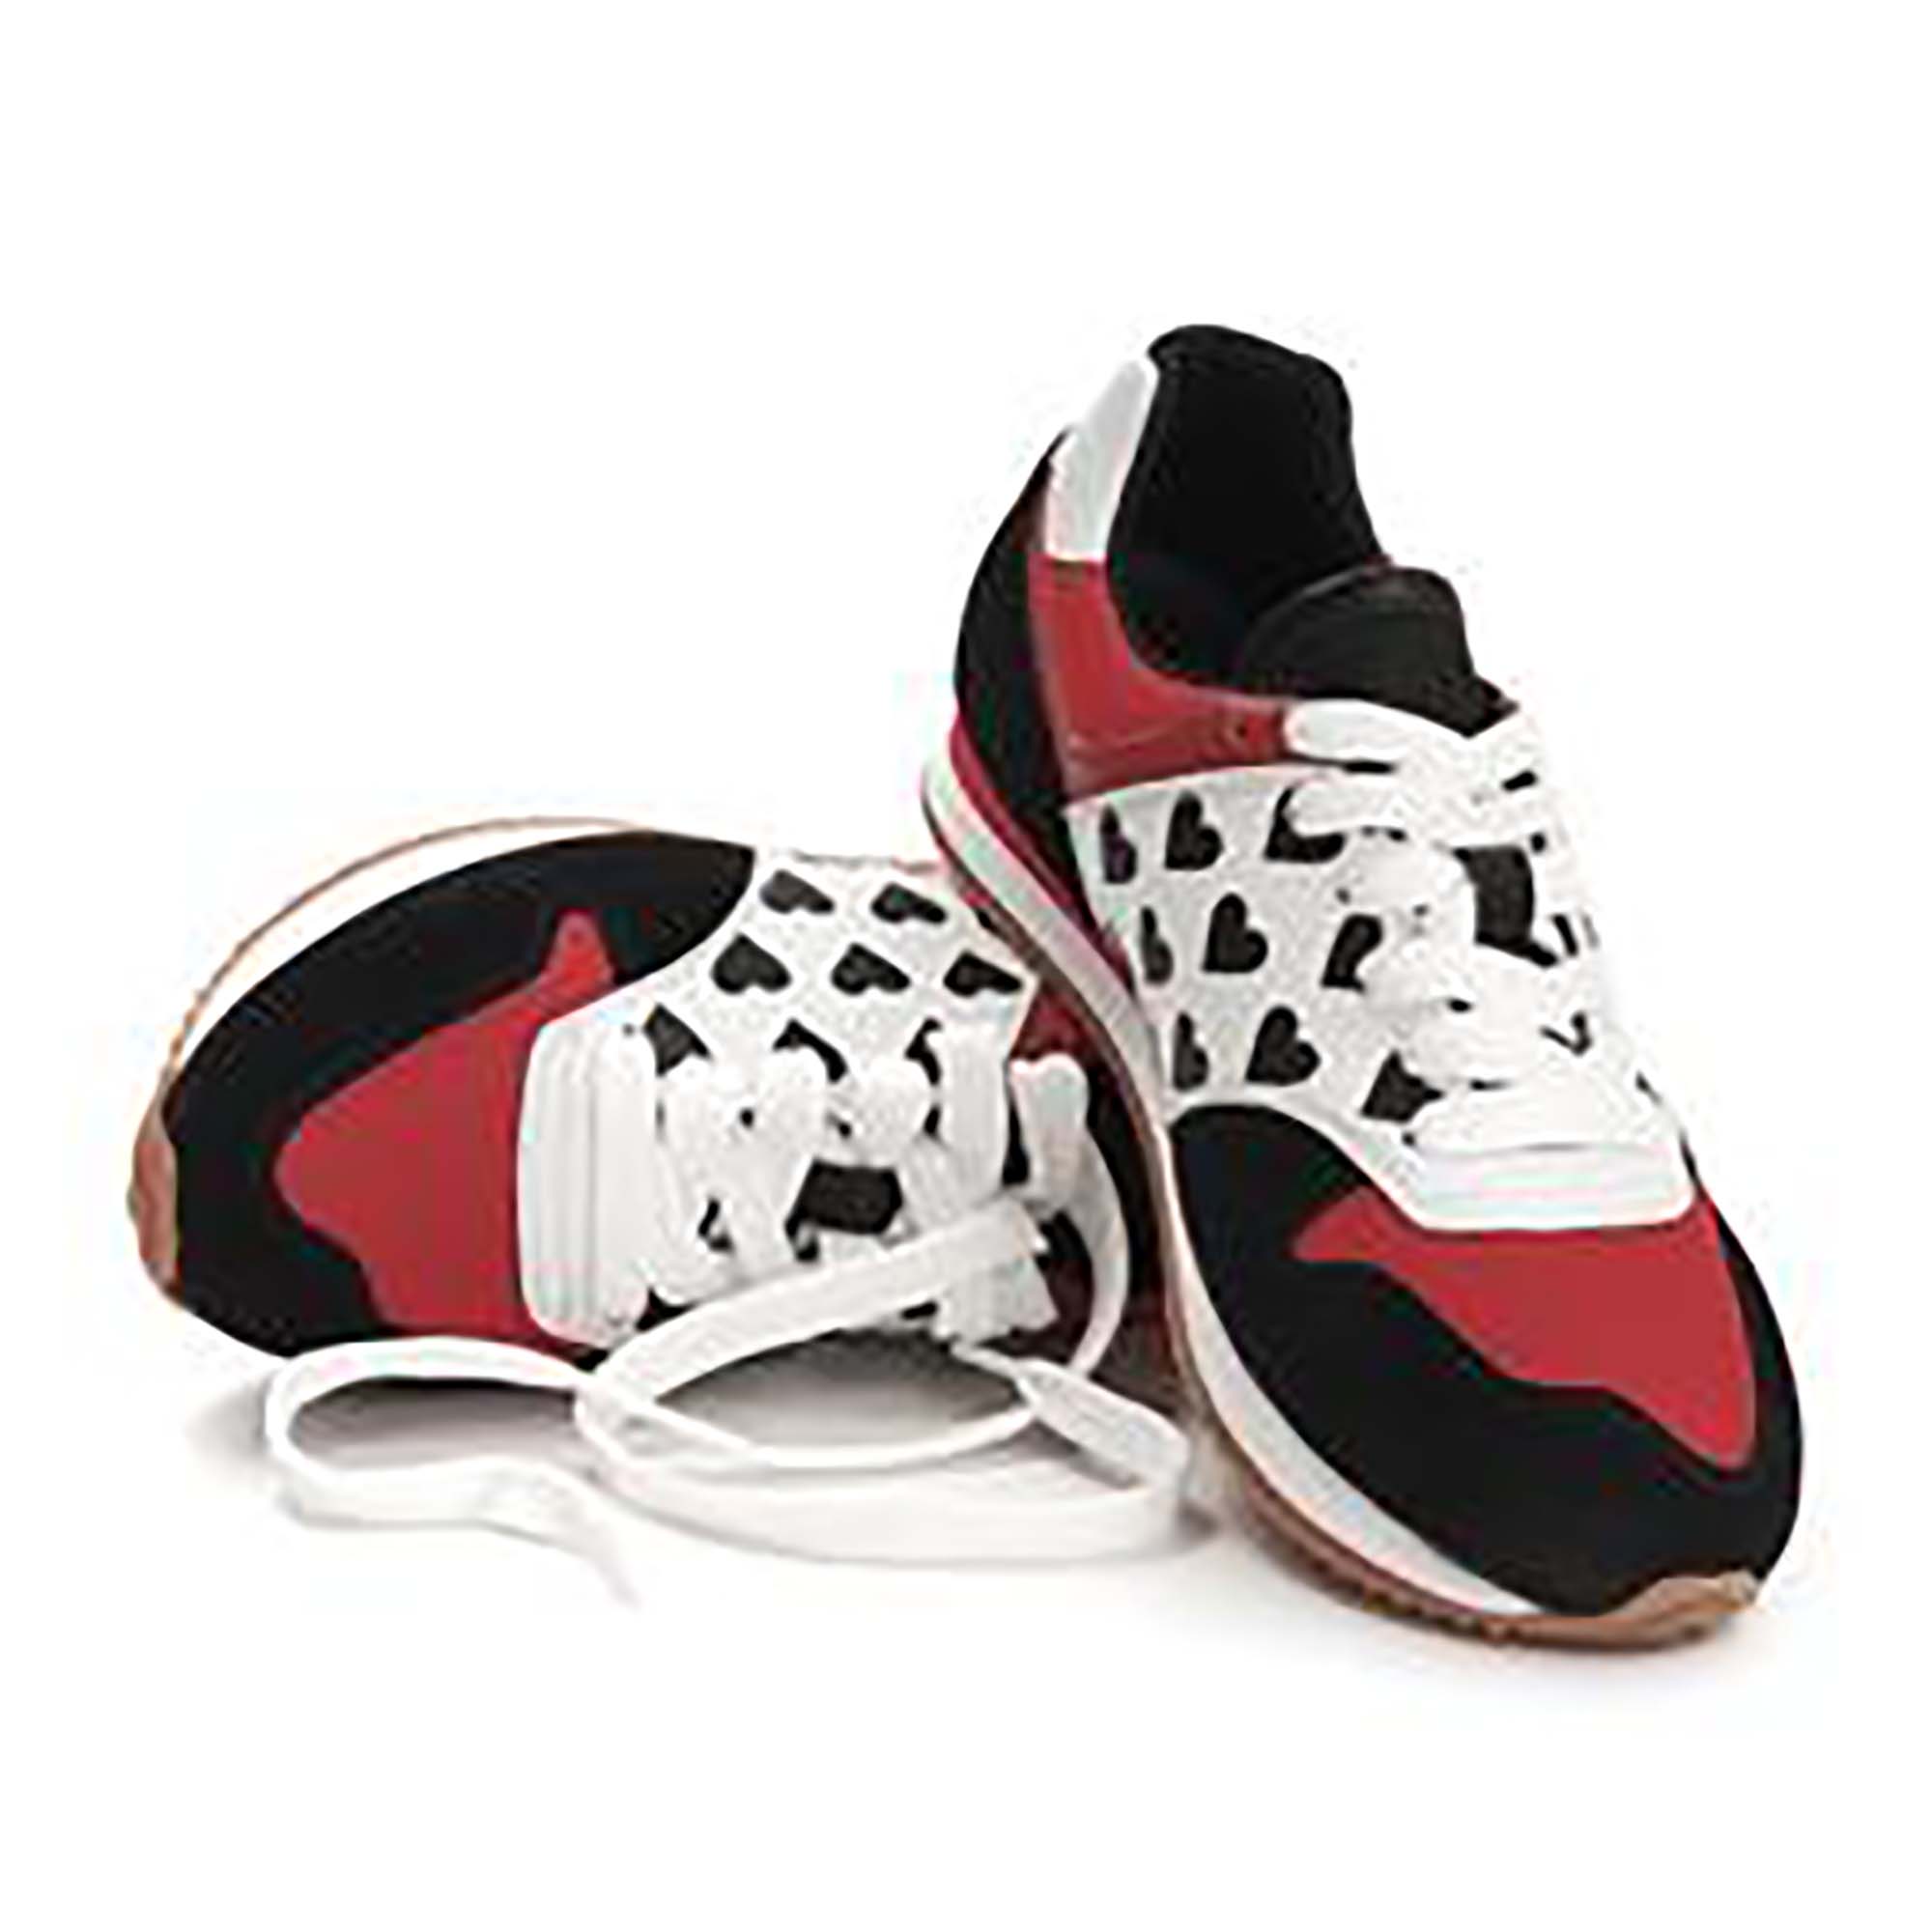 Lola Ramonalta lasten sneakerit, mustaa, punaista, valkoista ja sydämiä. Kuvassa molemmat kengät.